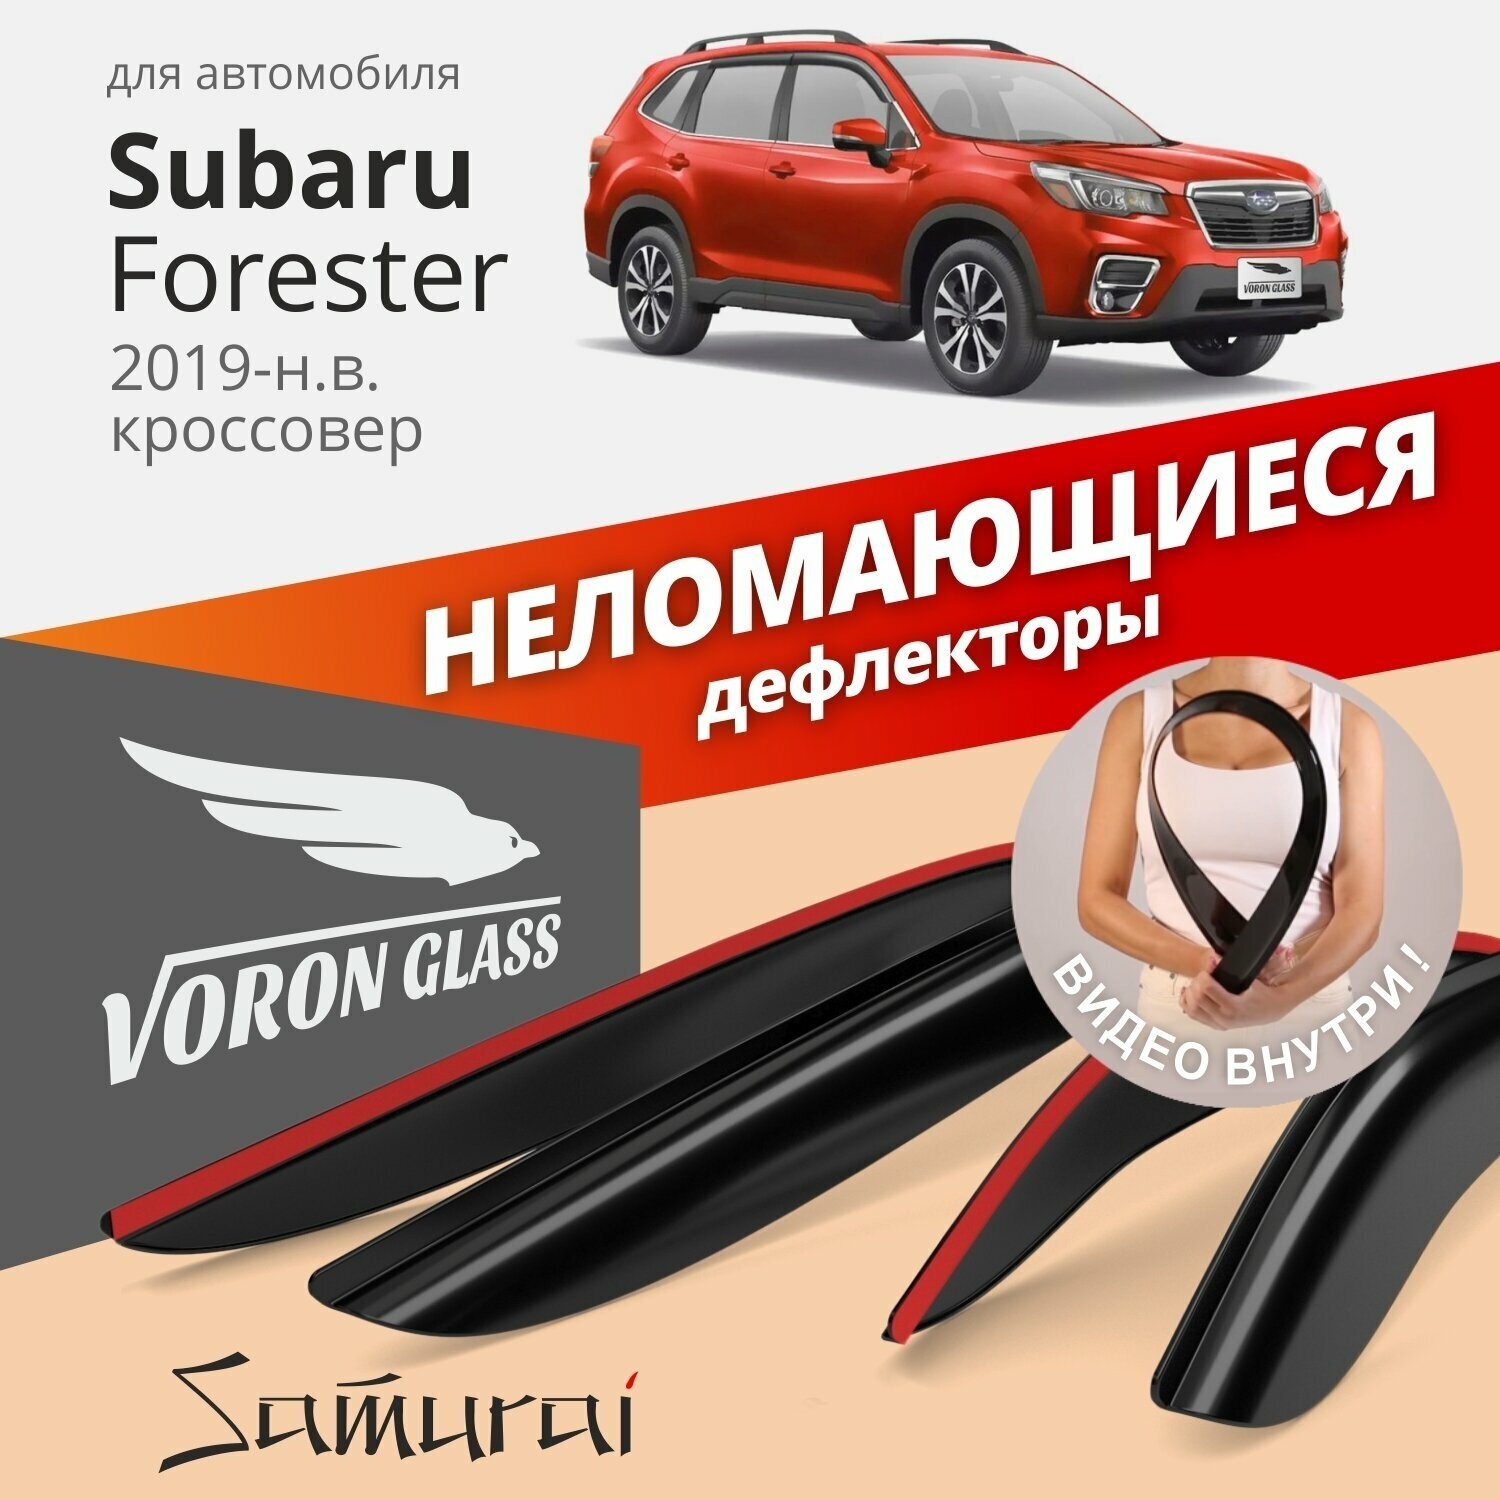 Дефлекторы окон неломающиеся Voron Glass серия Samurai для Subaru Forester V 2019-н. в.